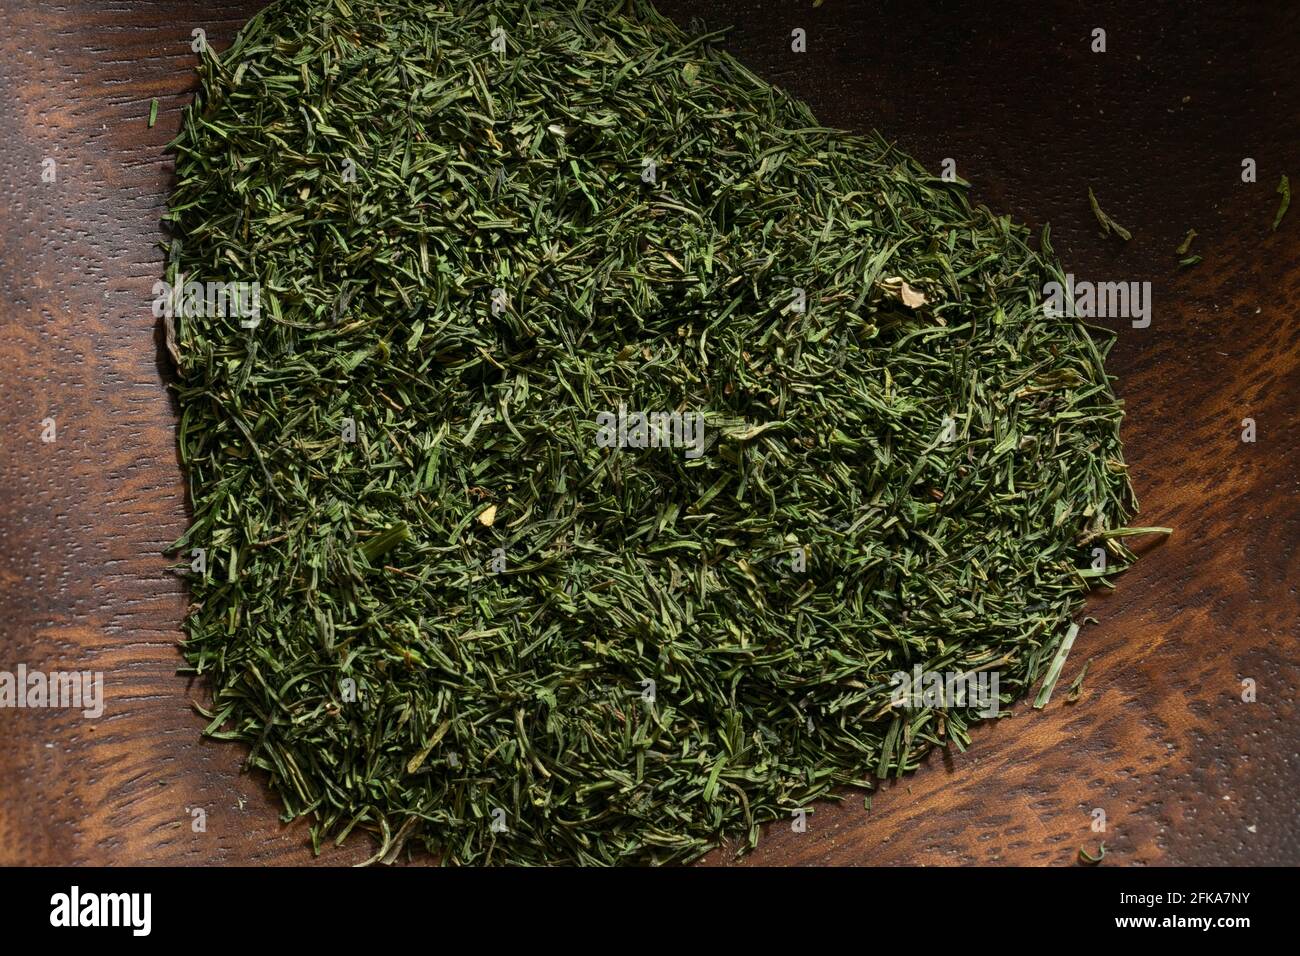 Eine Nahaufnahme von getrocknetem Dillkraut, das zum Würzen vieler Gerichte verwendet wird. Stockfoto